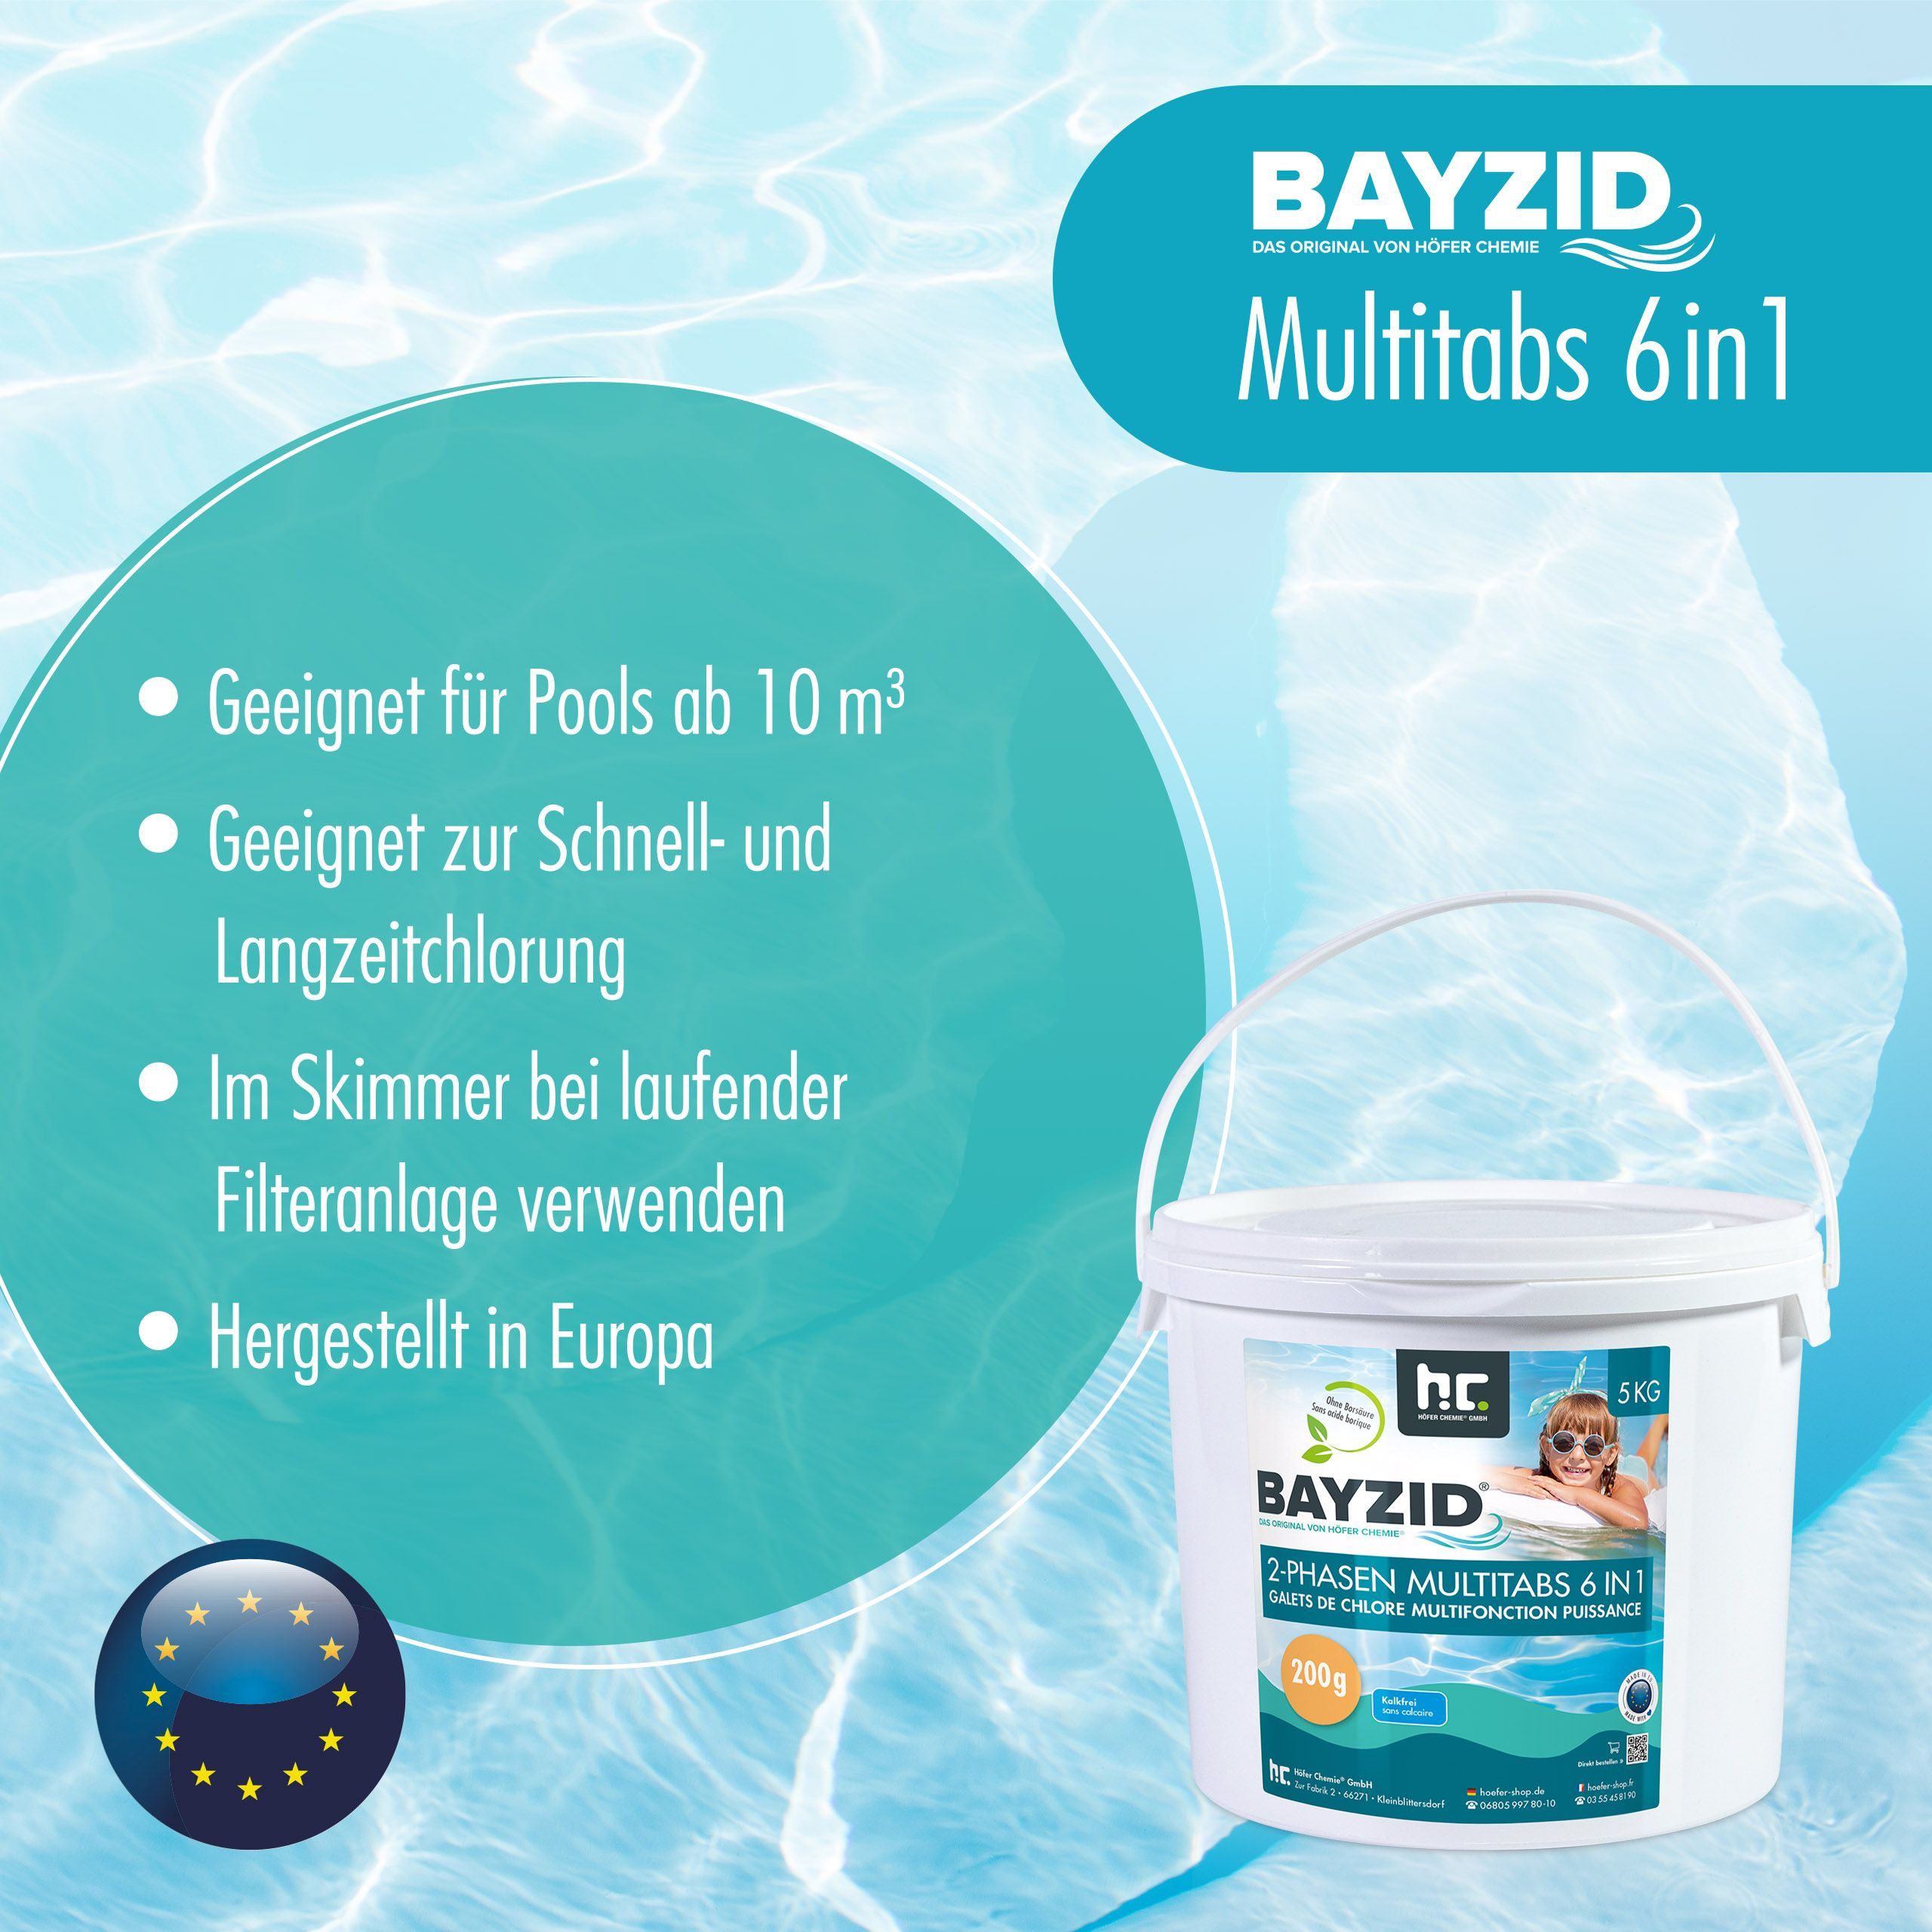 5 kg BAYZID® 2-Phasen-Multitabs 200g 6in1